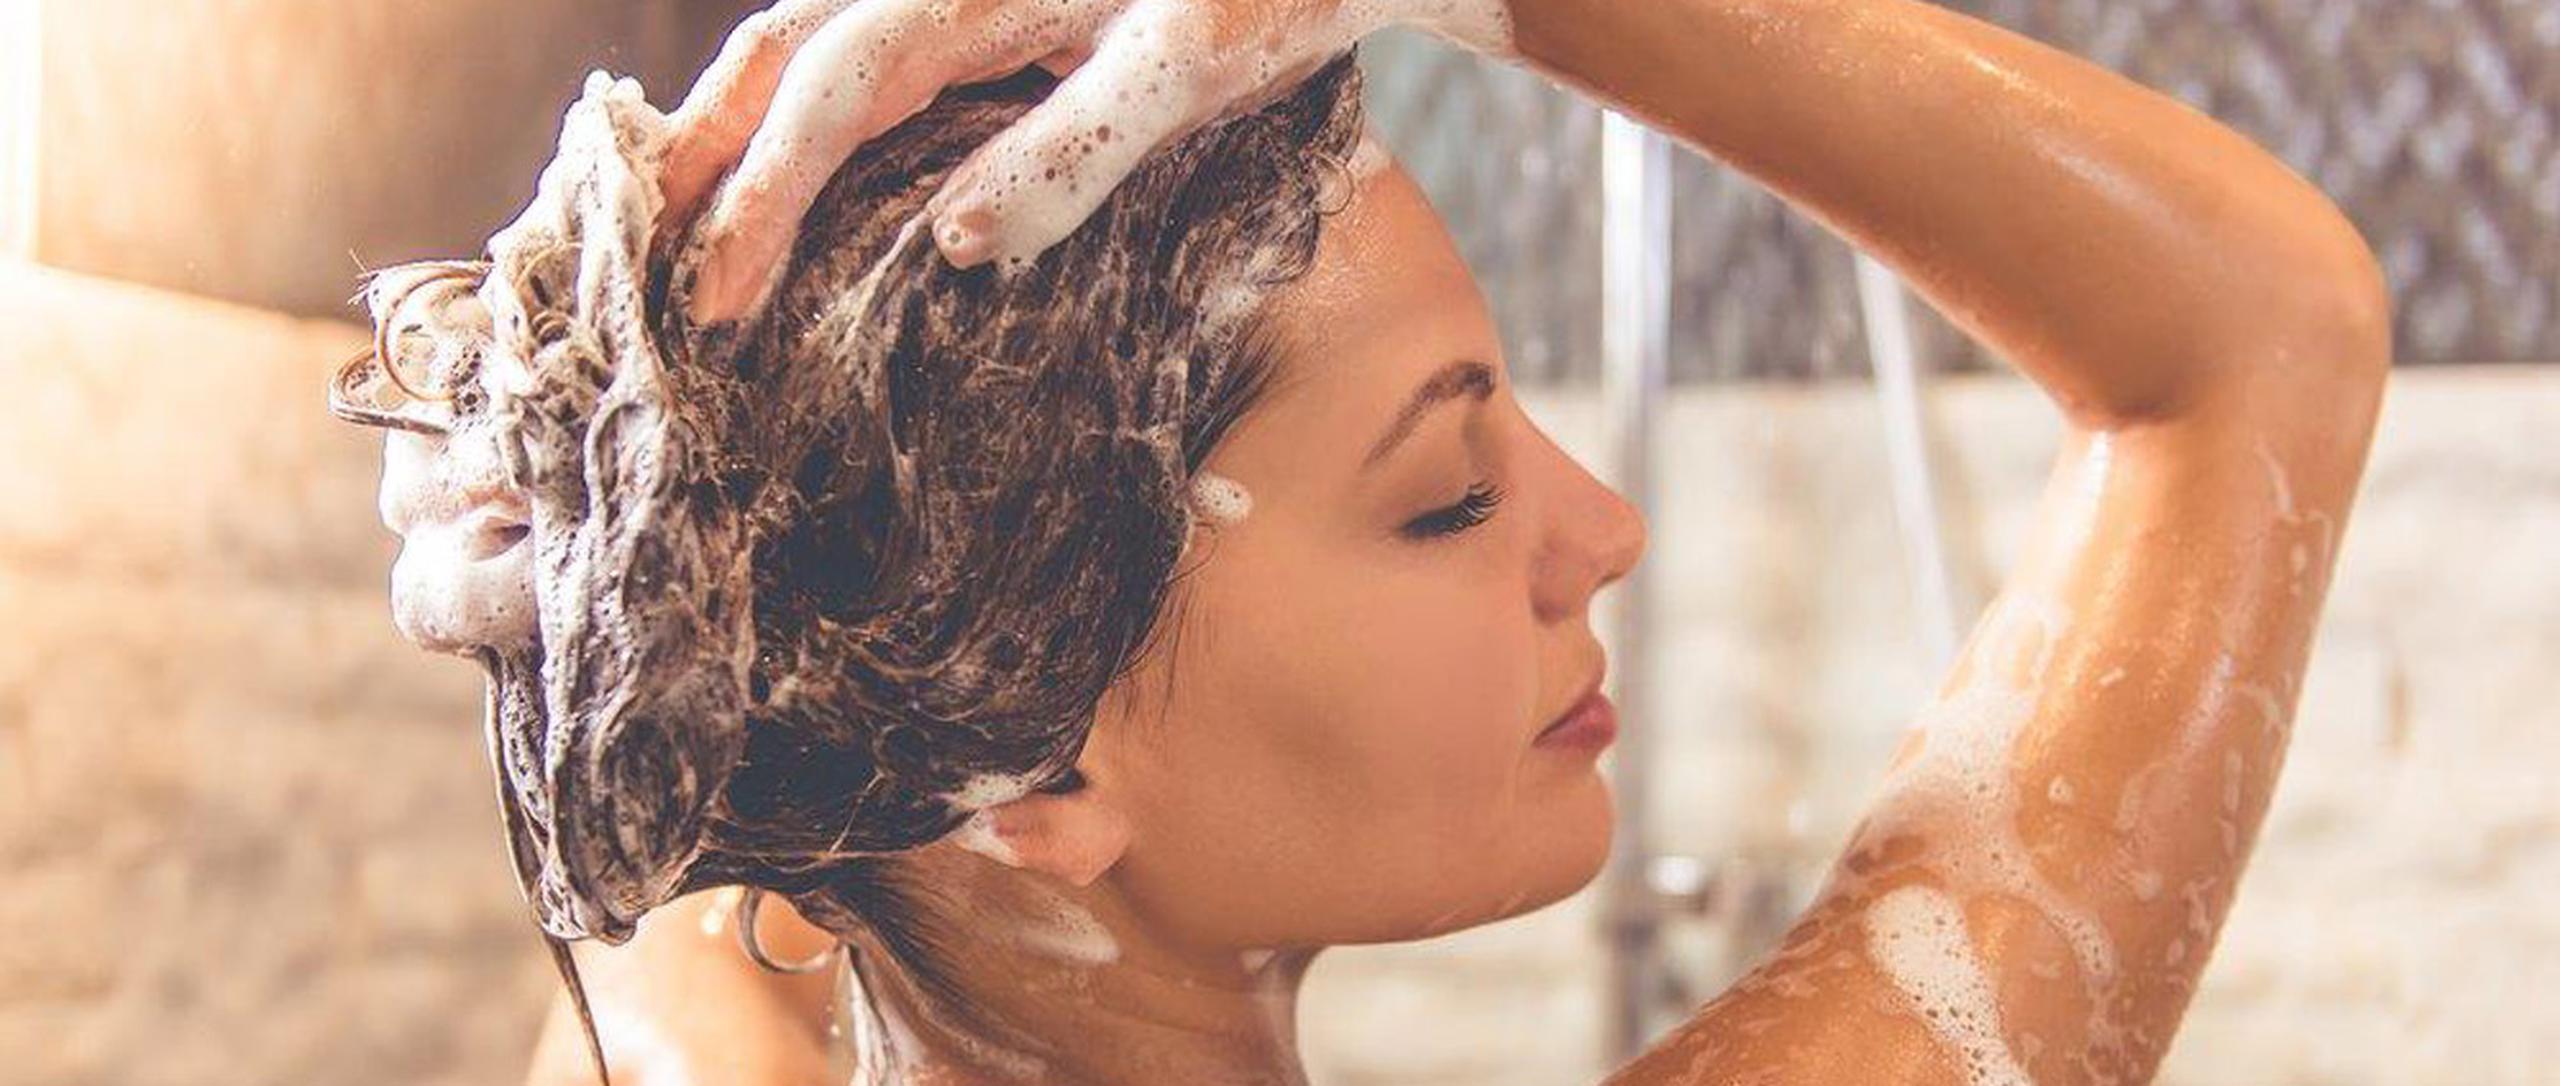 Bañarse demasiado irrita la piel, seca el pelo y hasta puede cambiarnos el color. (Shutterstock)